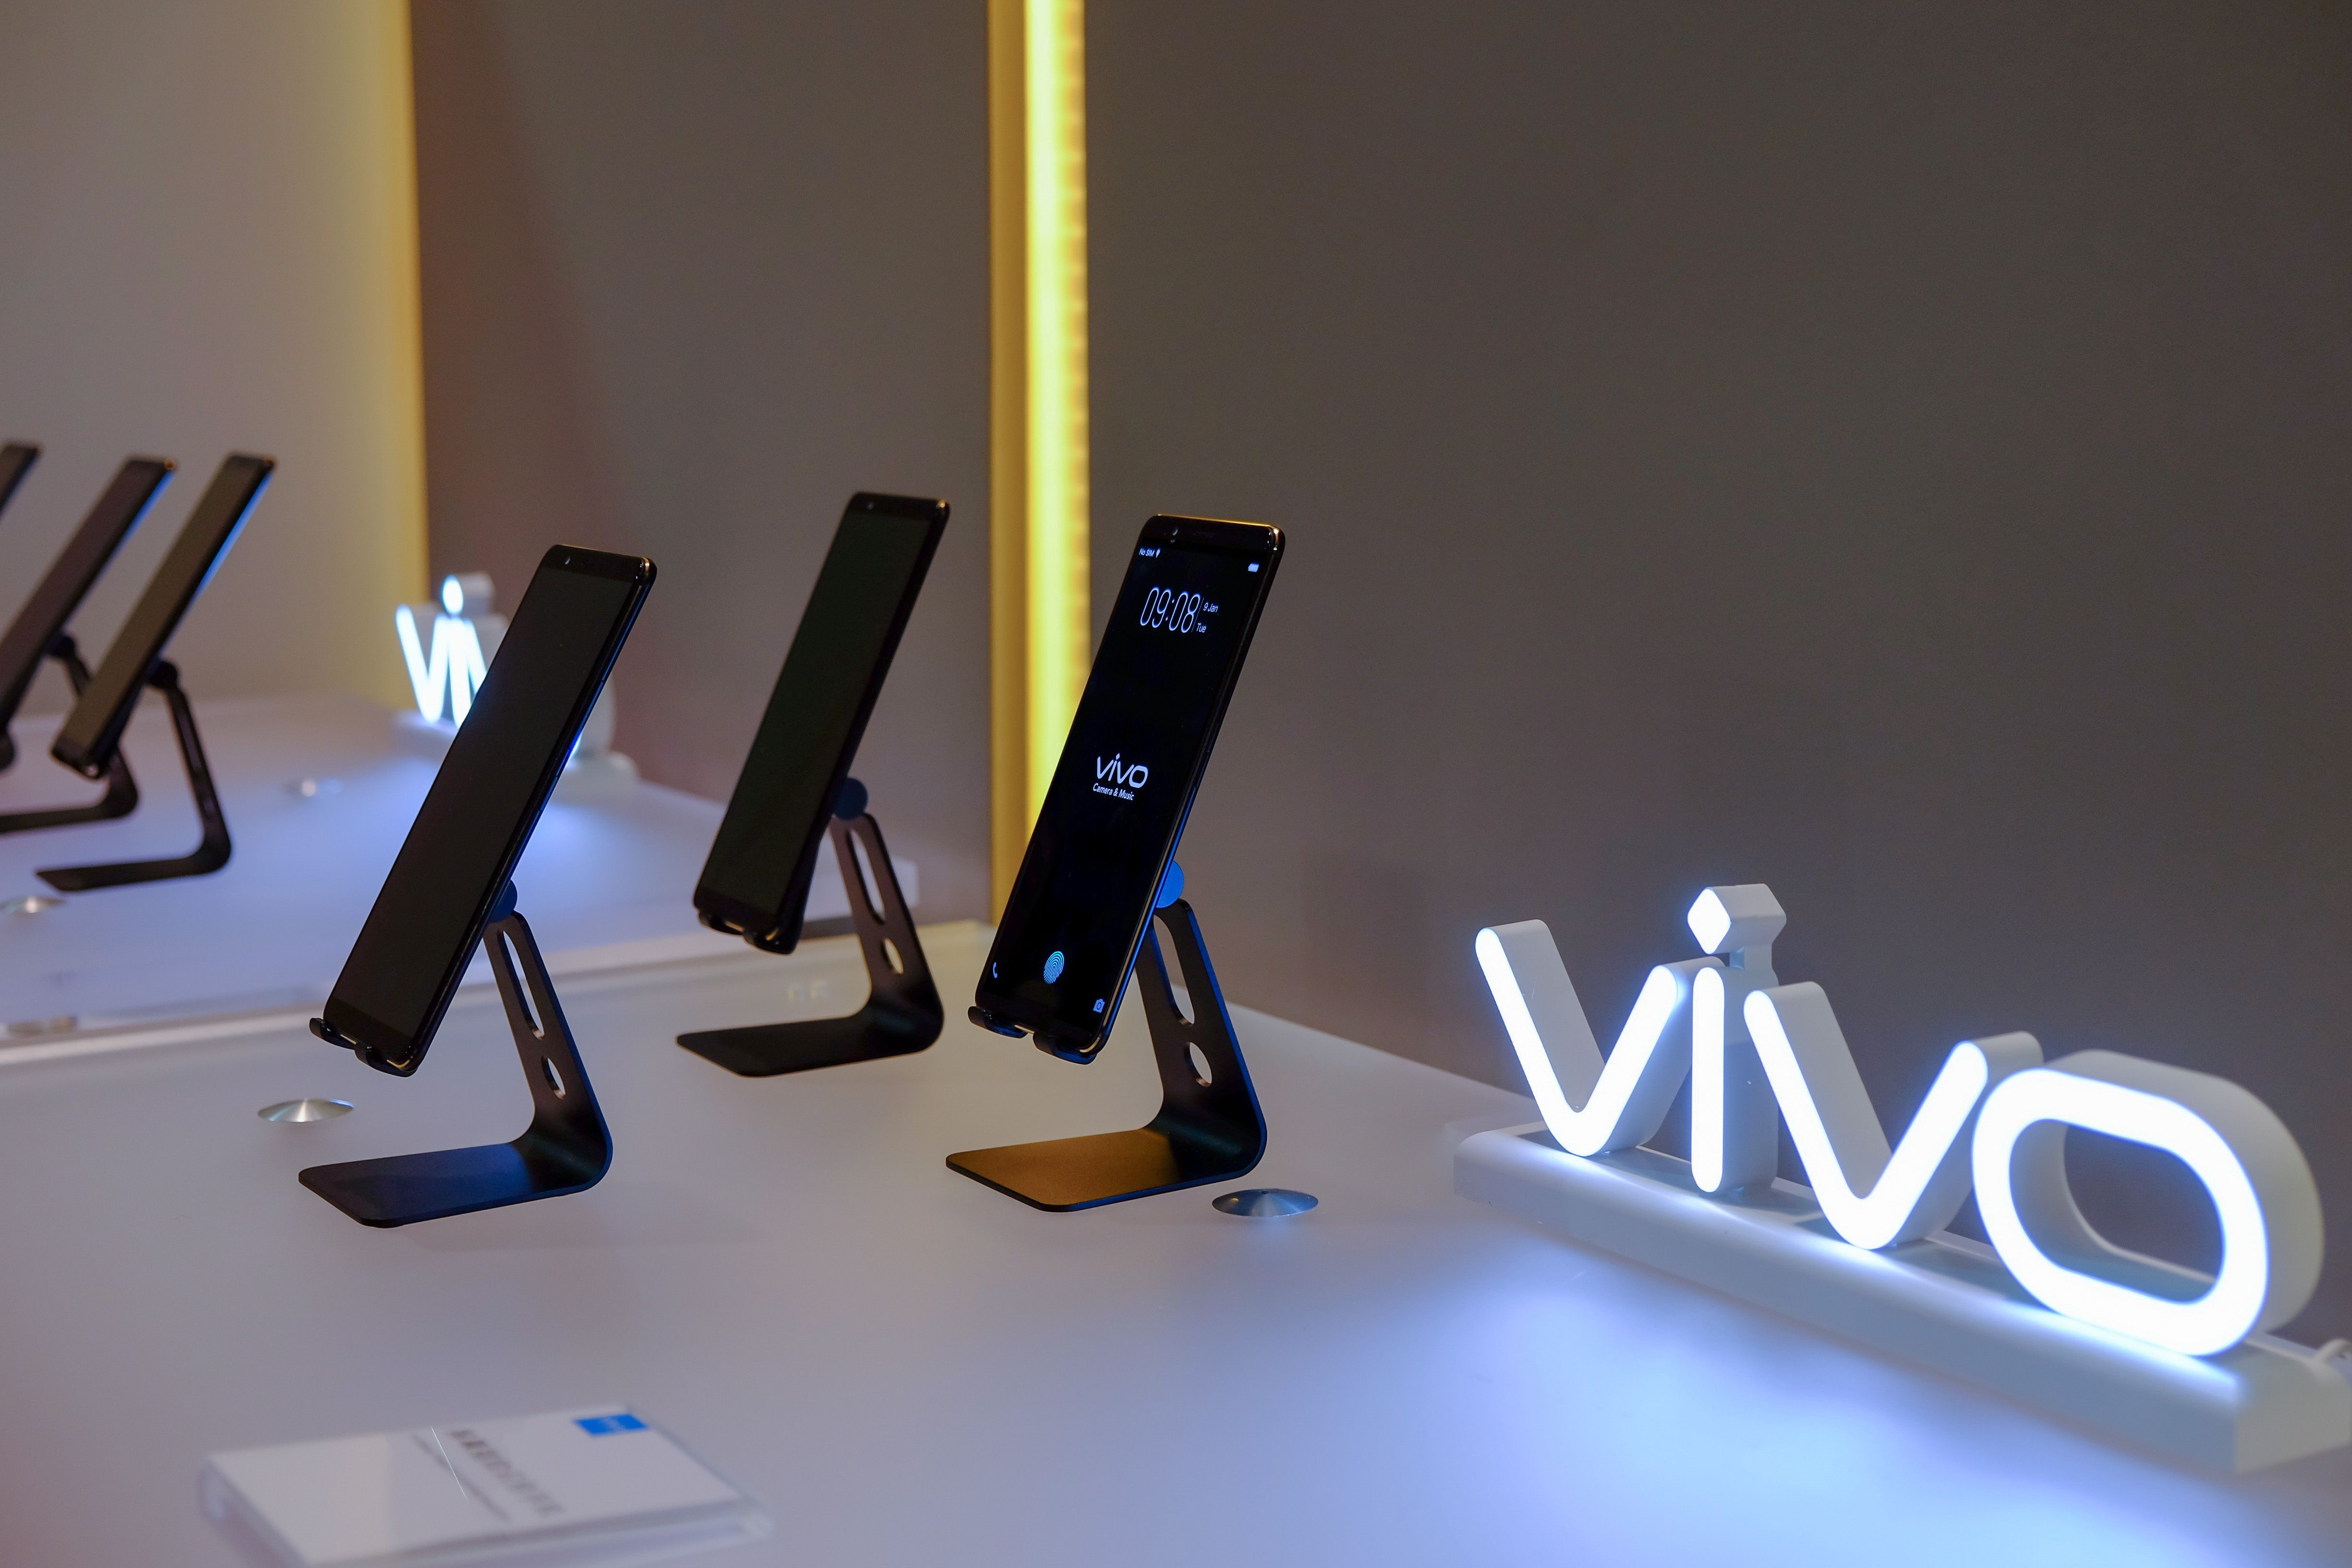 Berikut Keunggulan Utama Vivo In-Display Fingerprint Scanning Technology